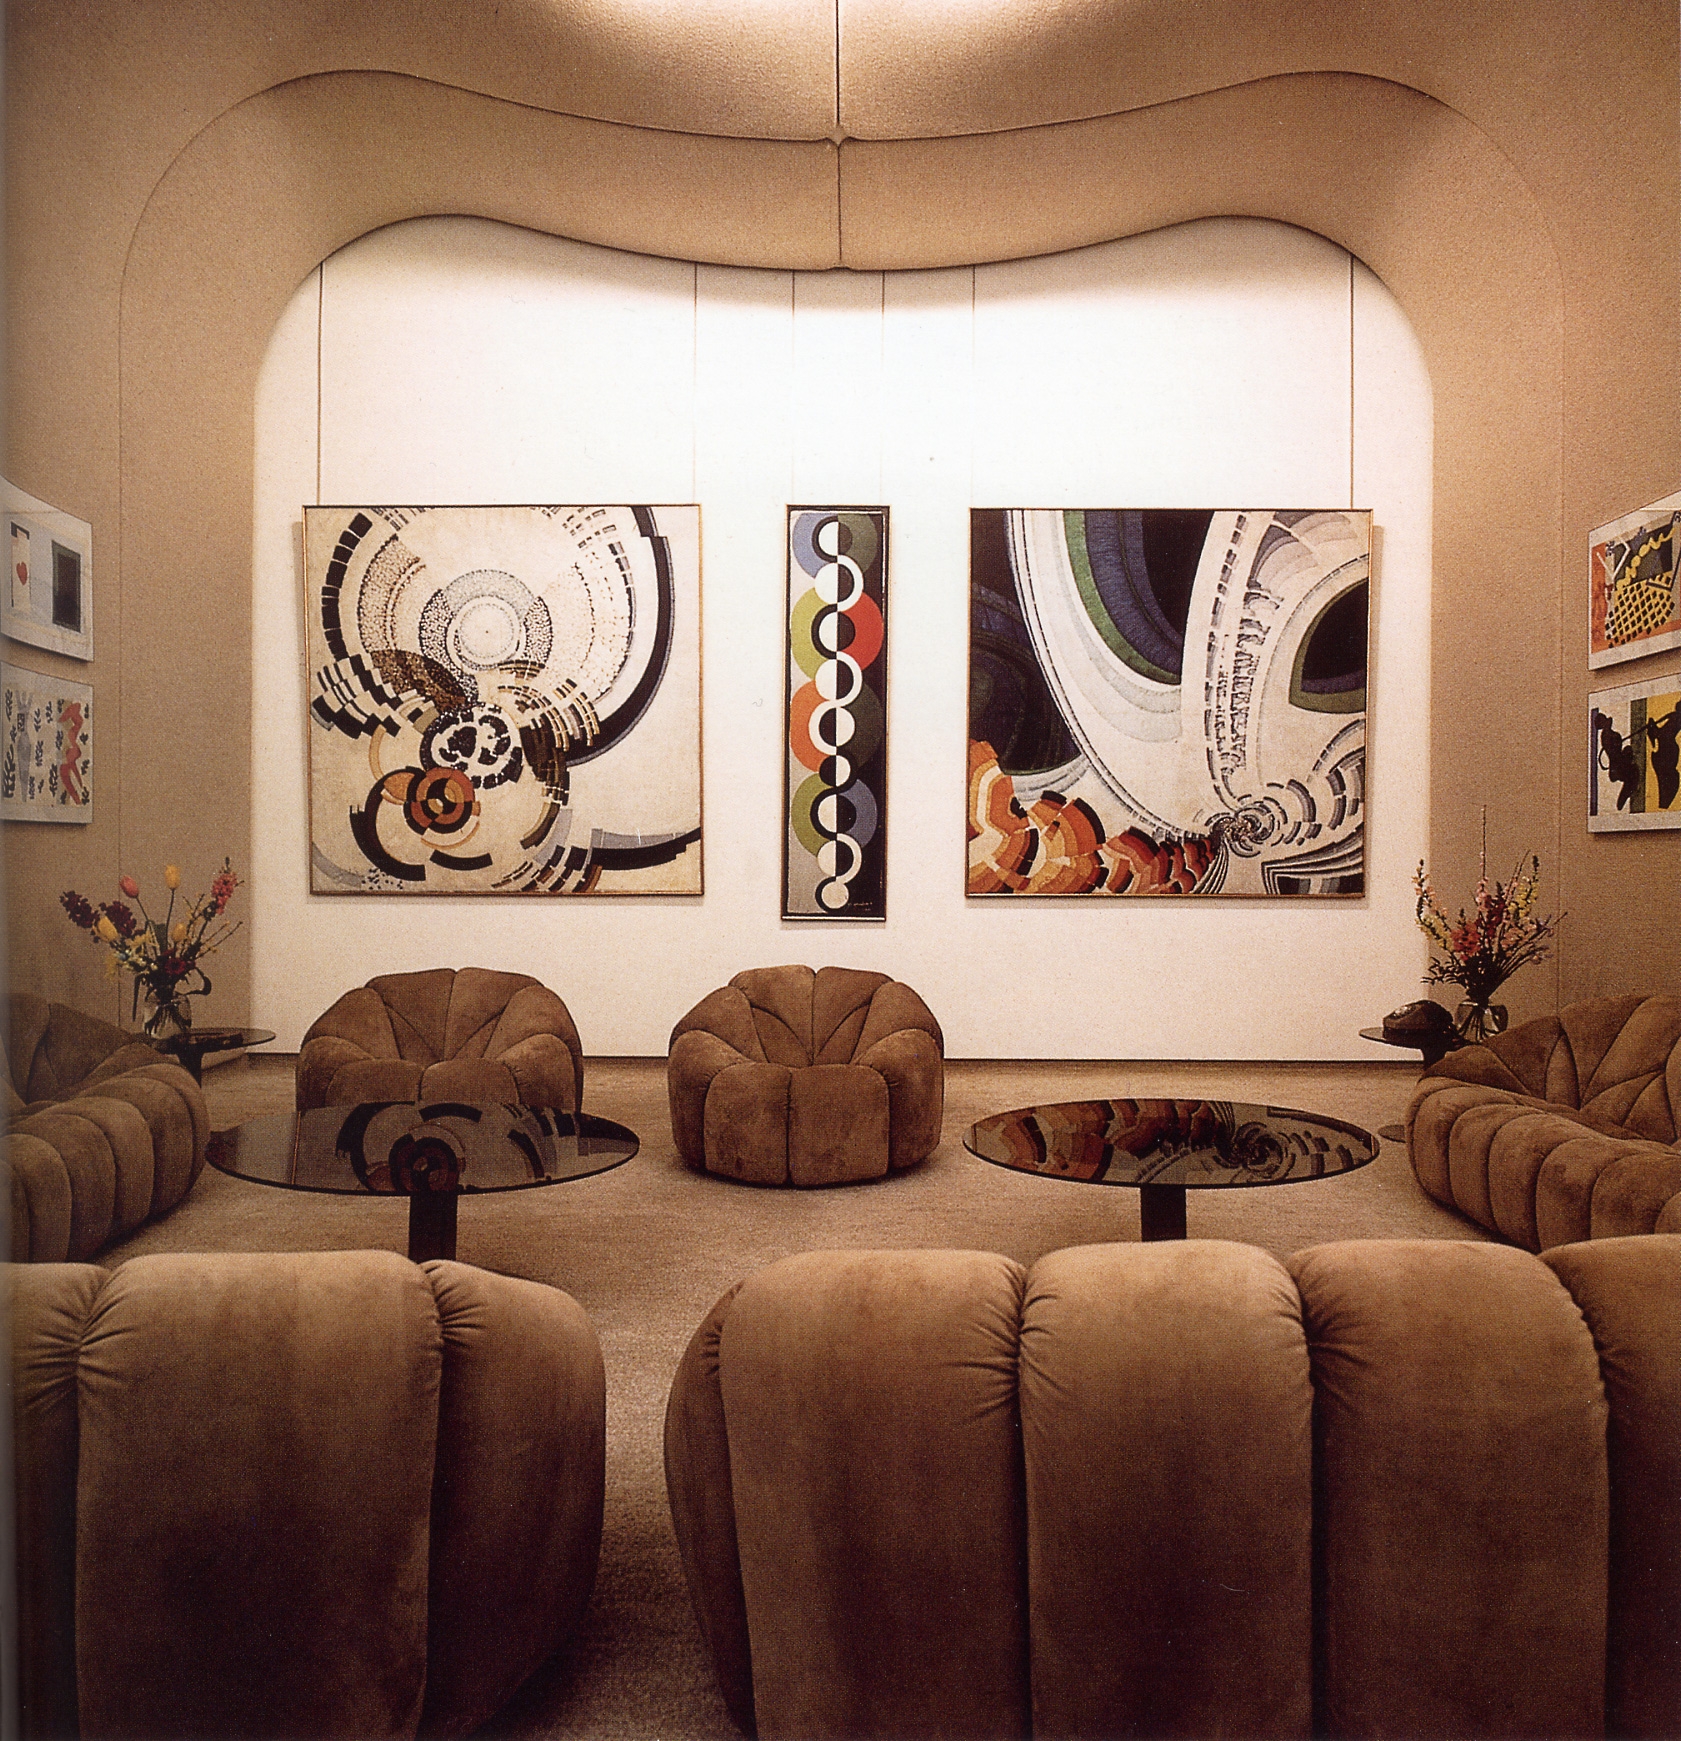 The Paintings Room, Palais de l&rsquo;&Eacute;lys&eacute;e, Paris, France, 1972
&nbsp;